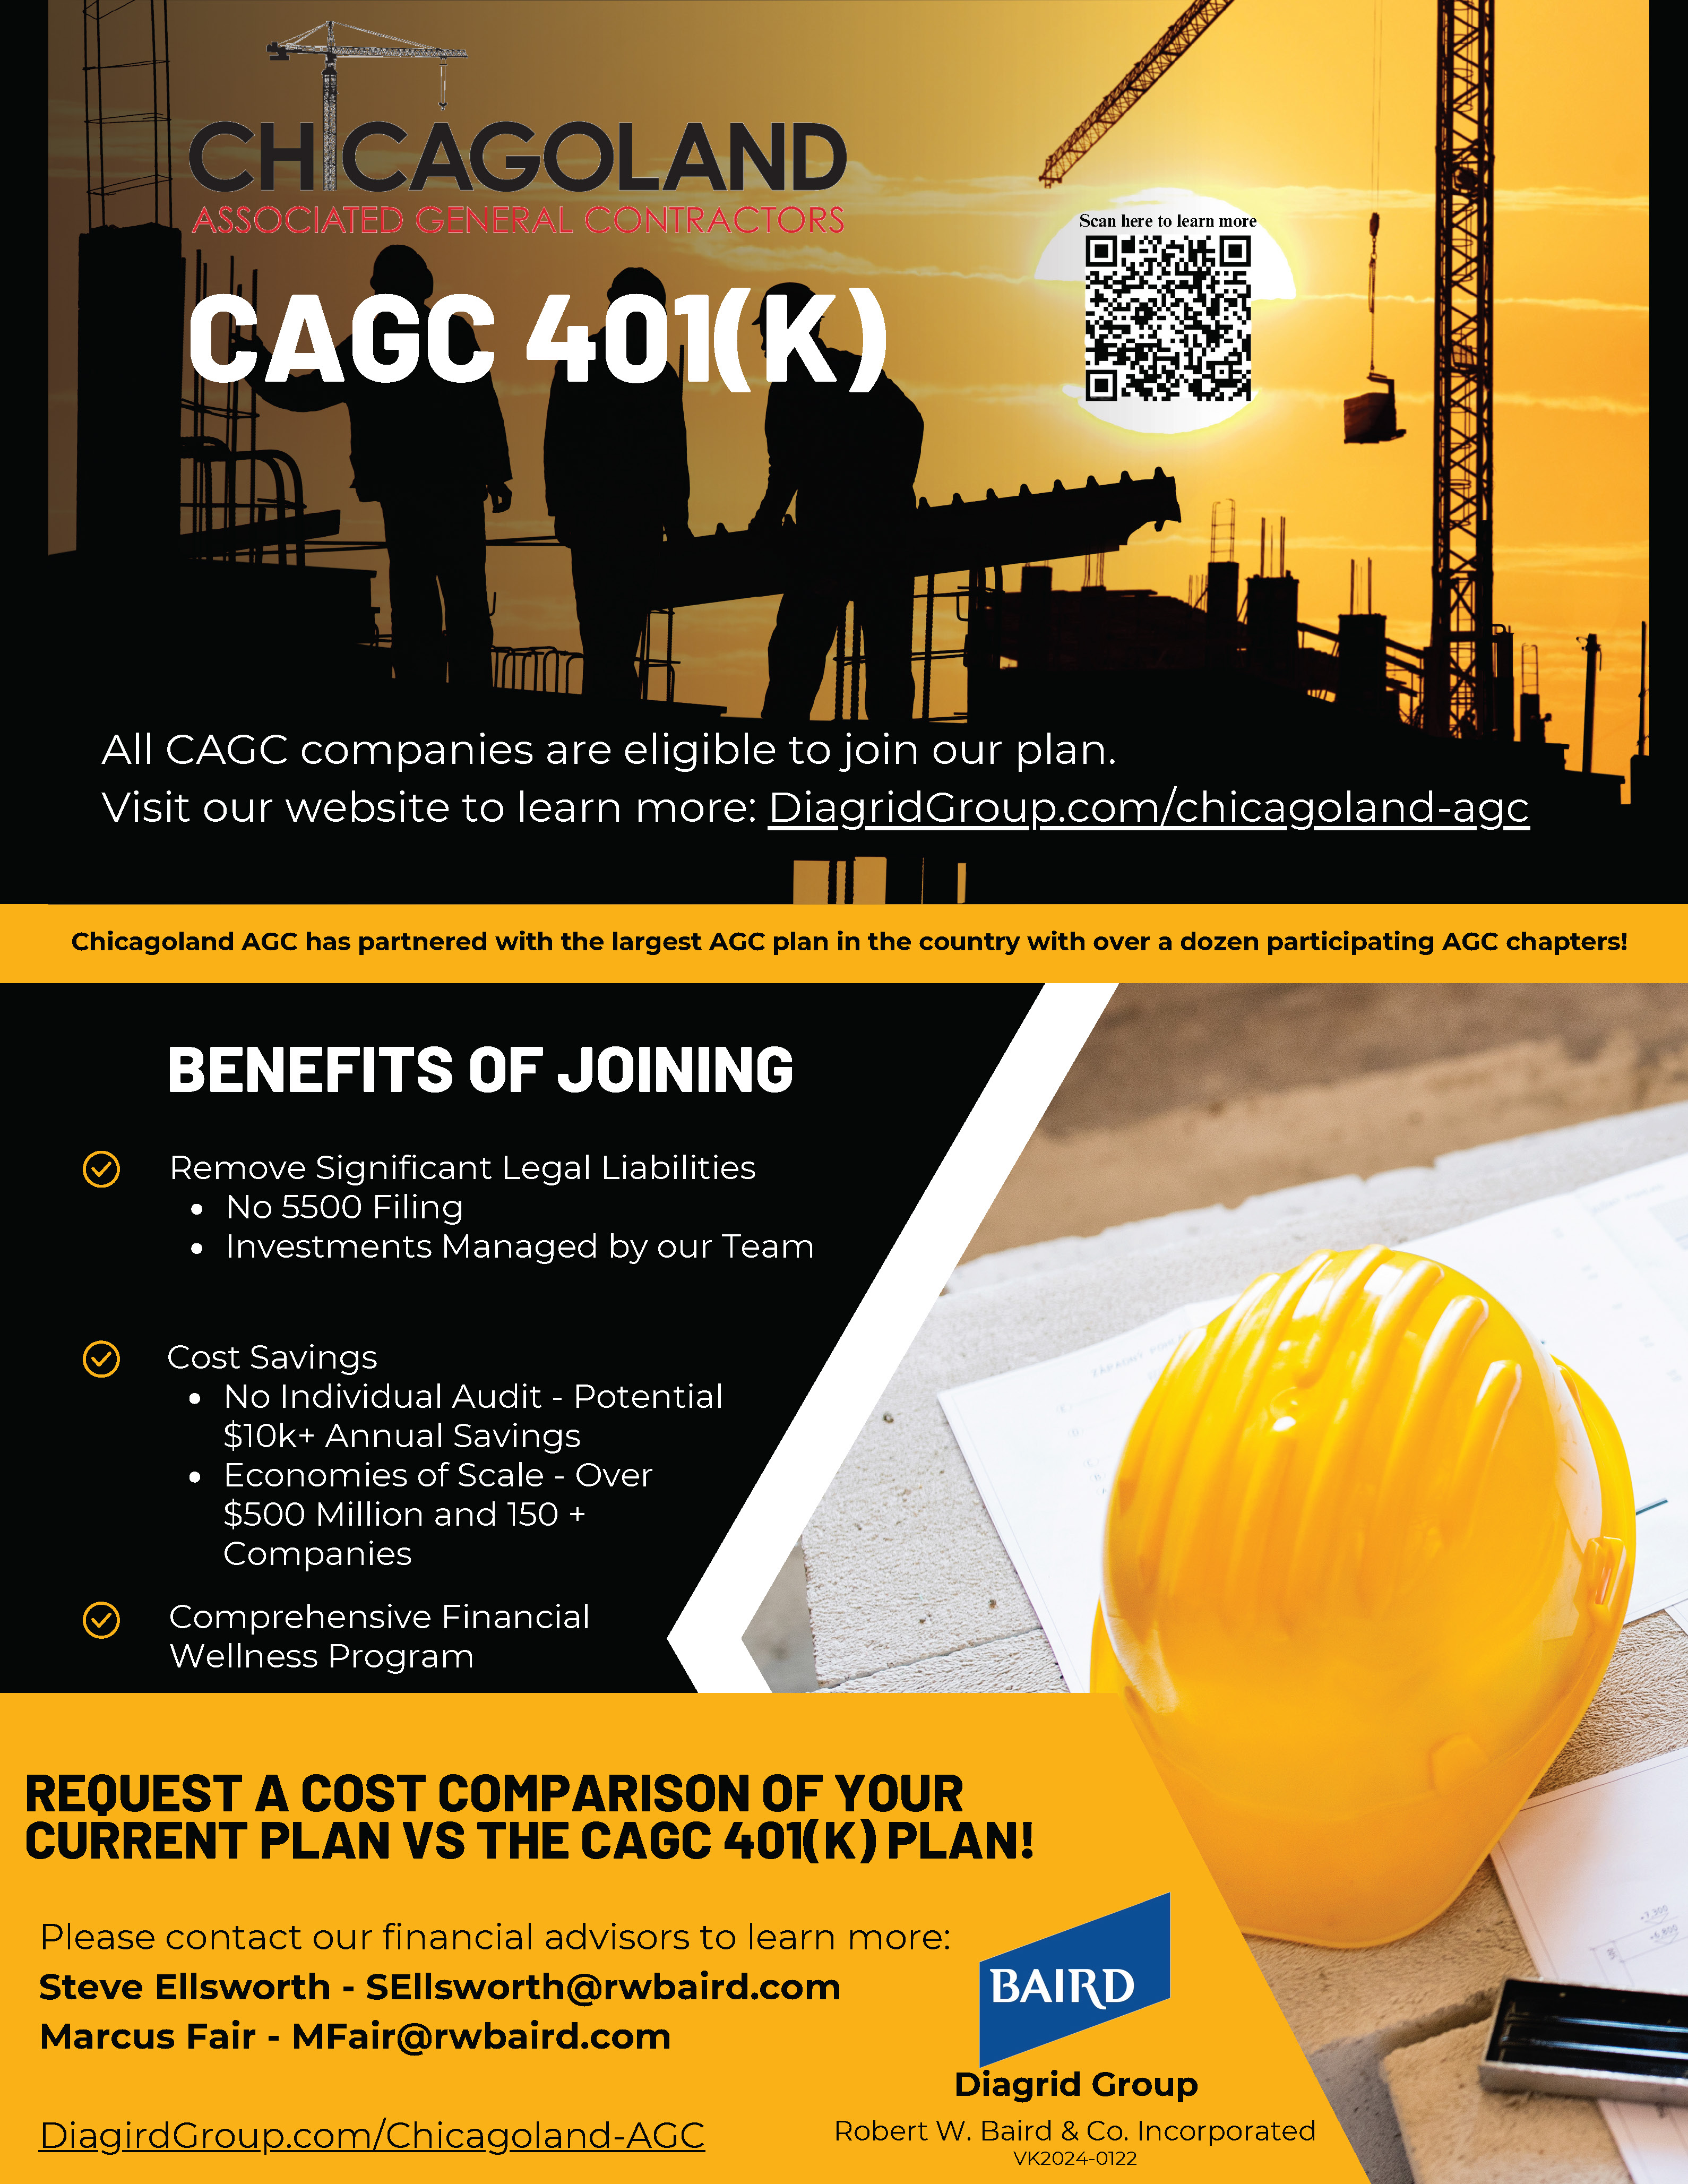 CAGC 401k Informational Flyer